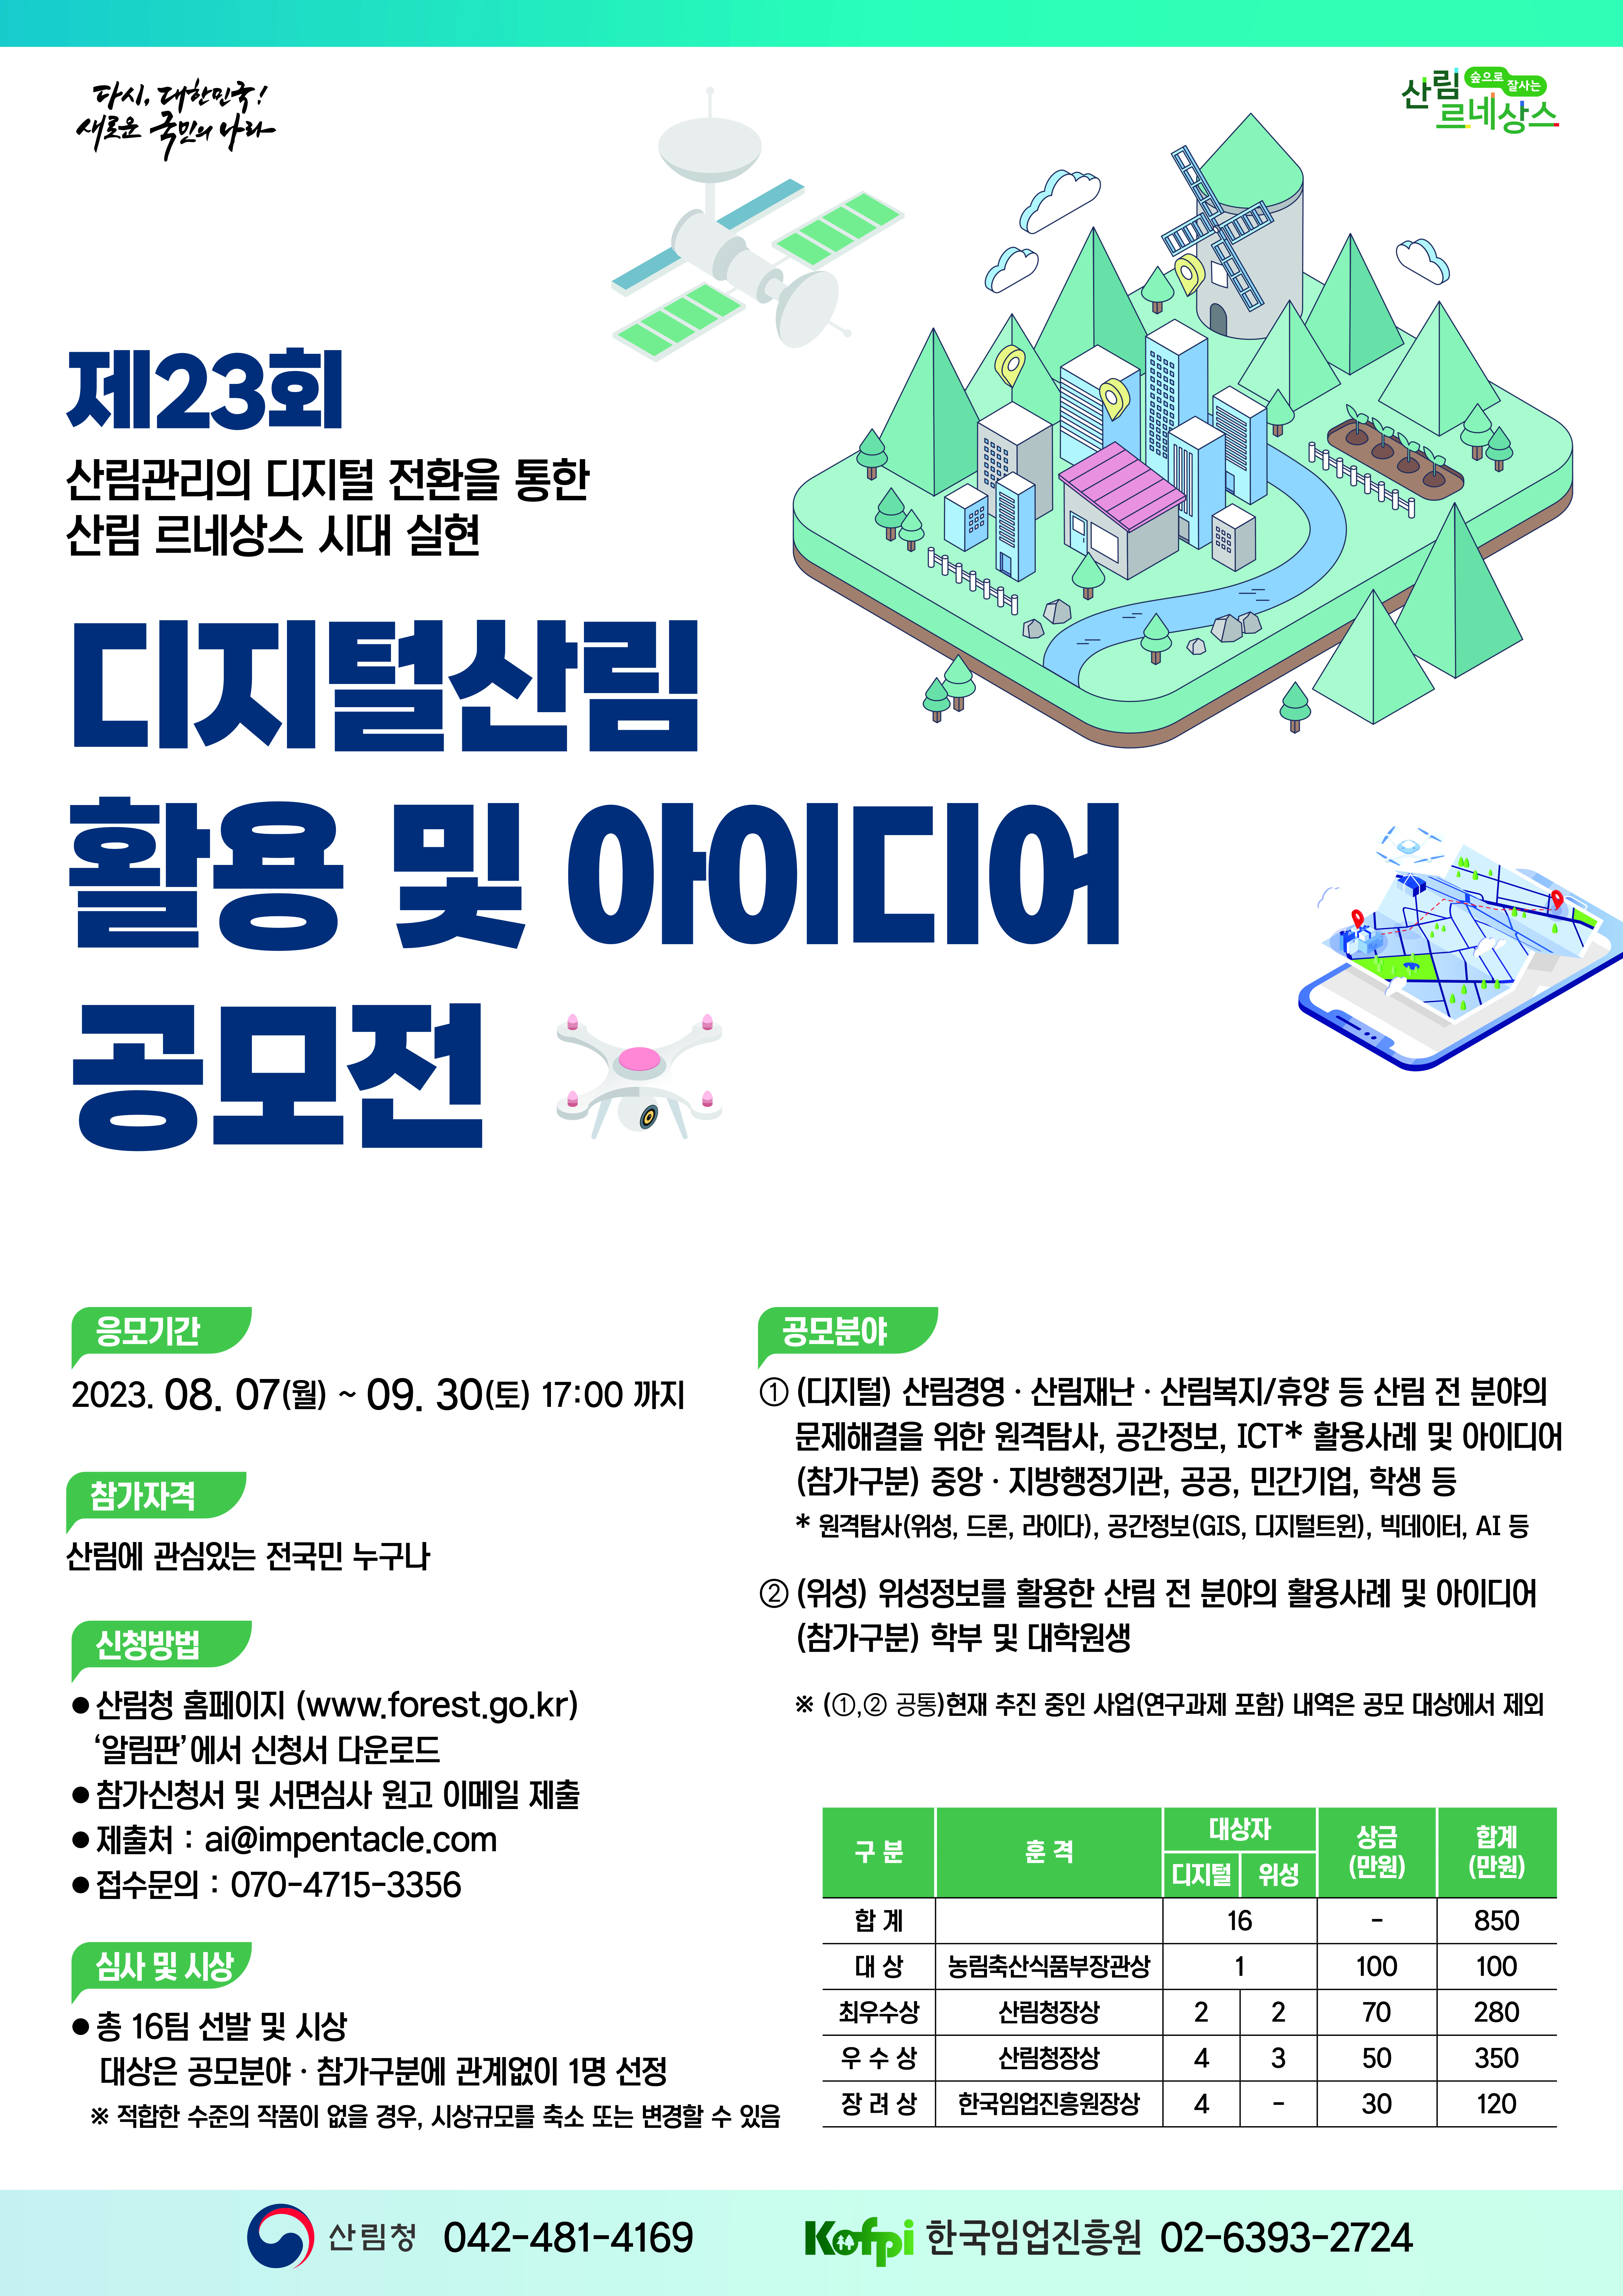 ‘제23회 디지털산림 활용 및 아이디어 공모전’ 개최